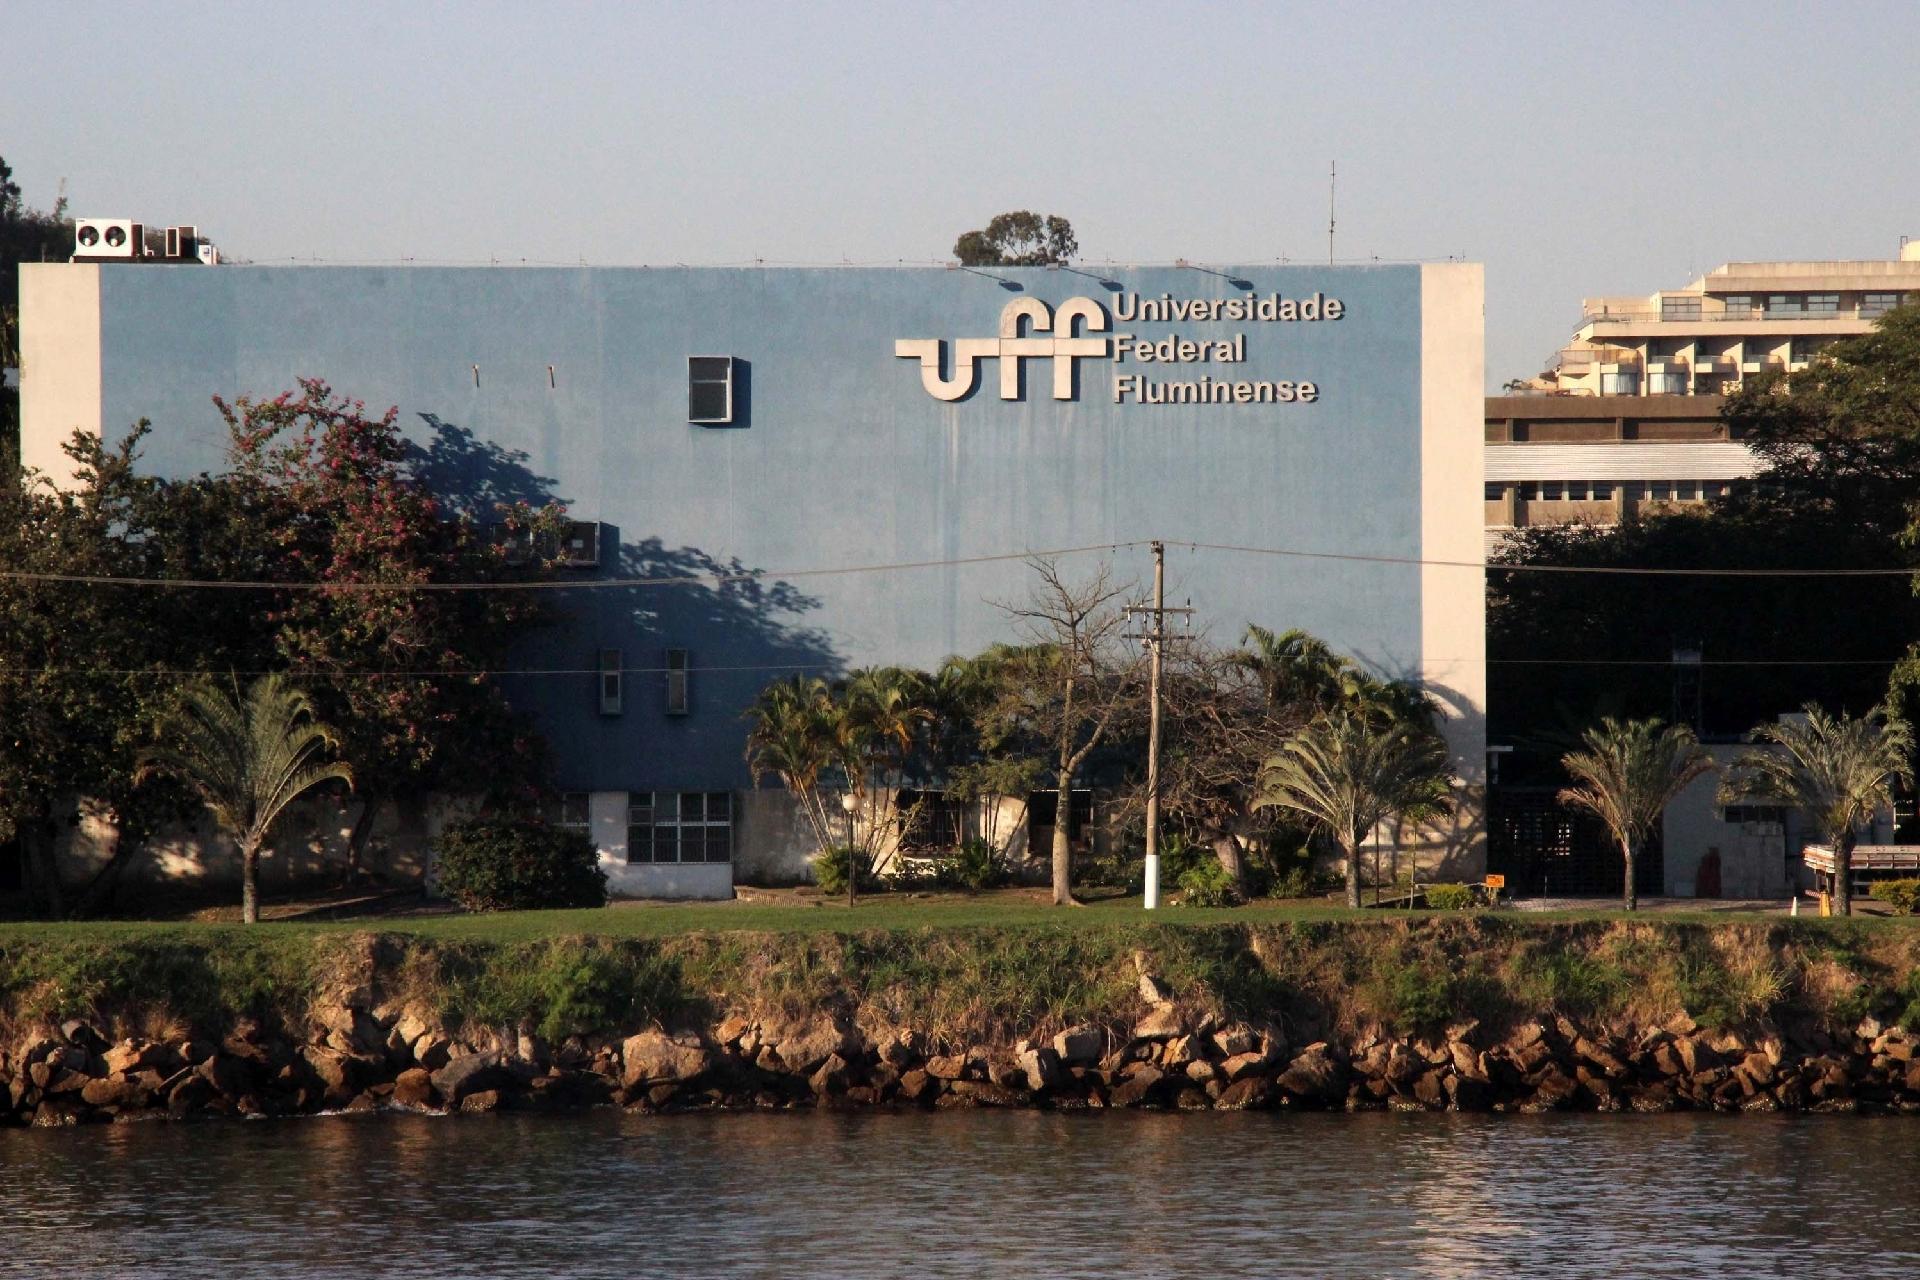 Corte de R$ 32 milhões prejudica funcionamento, afirma UFMG: 'severo golpe